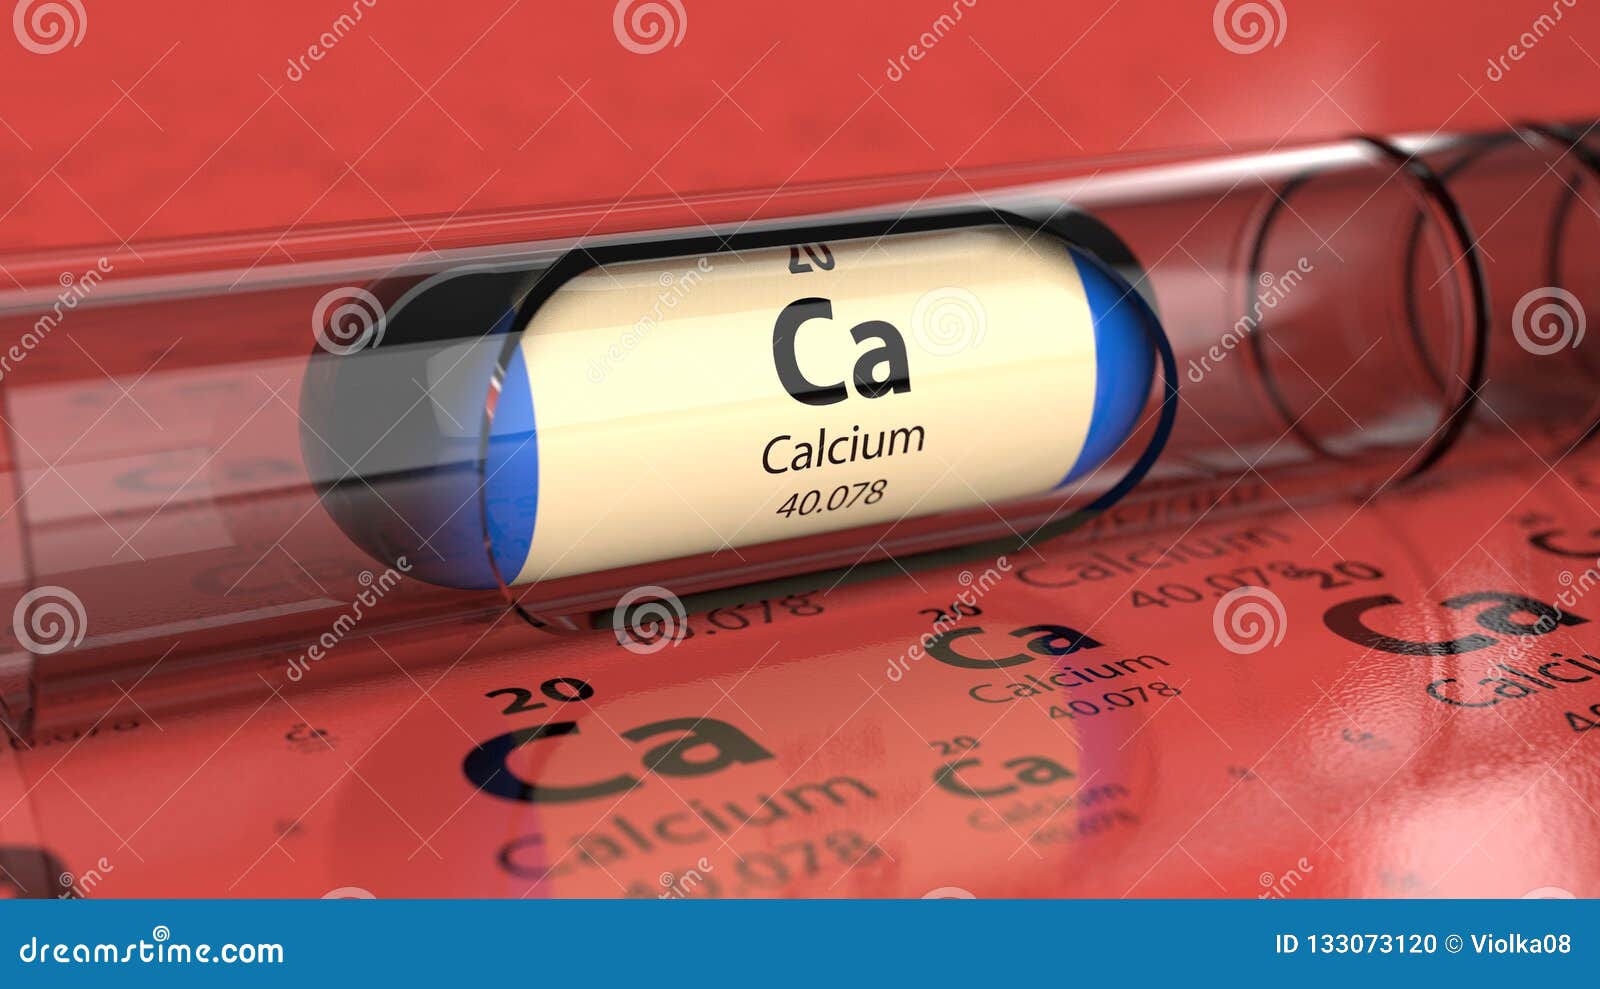 capsule with calcium ca